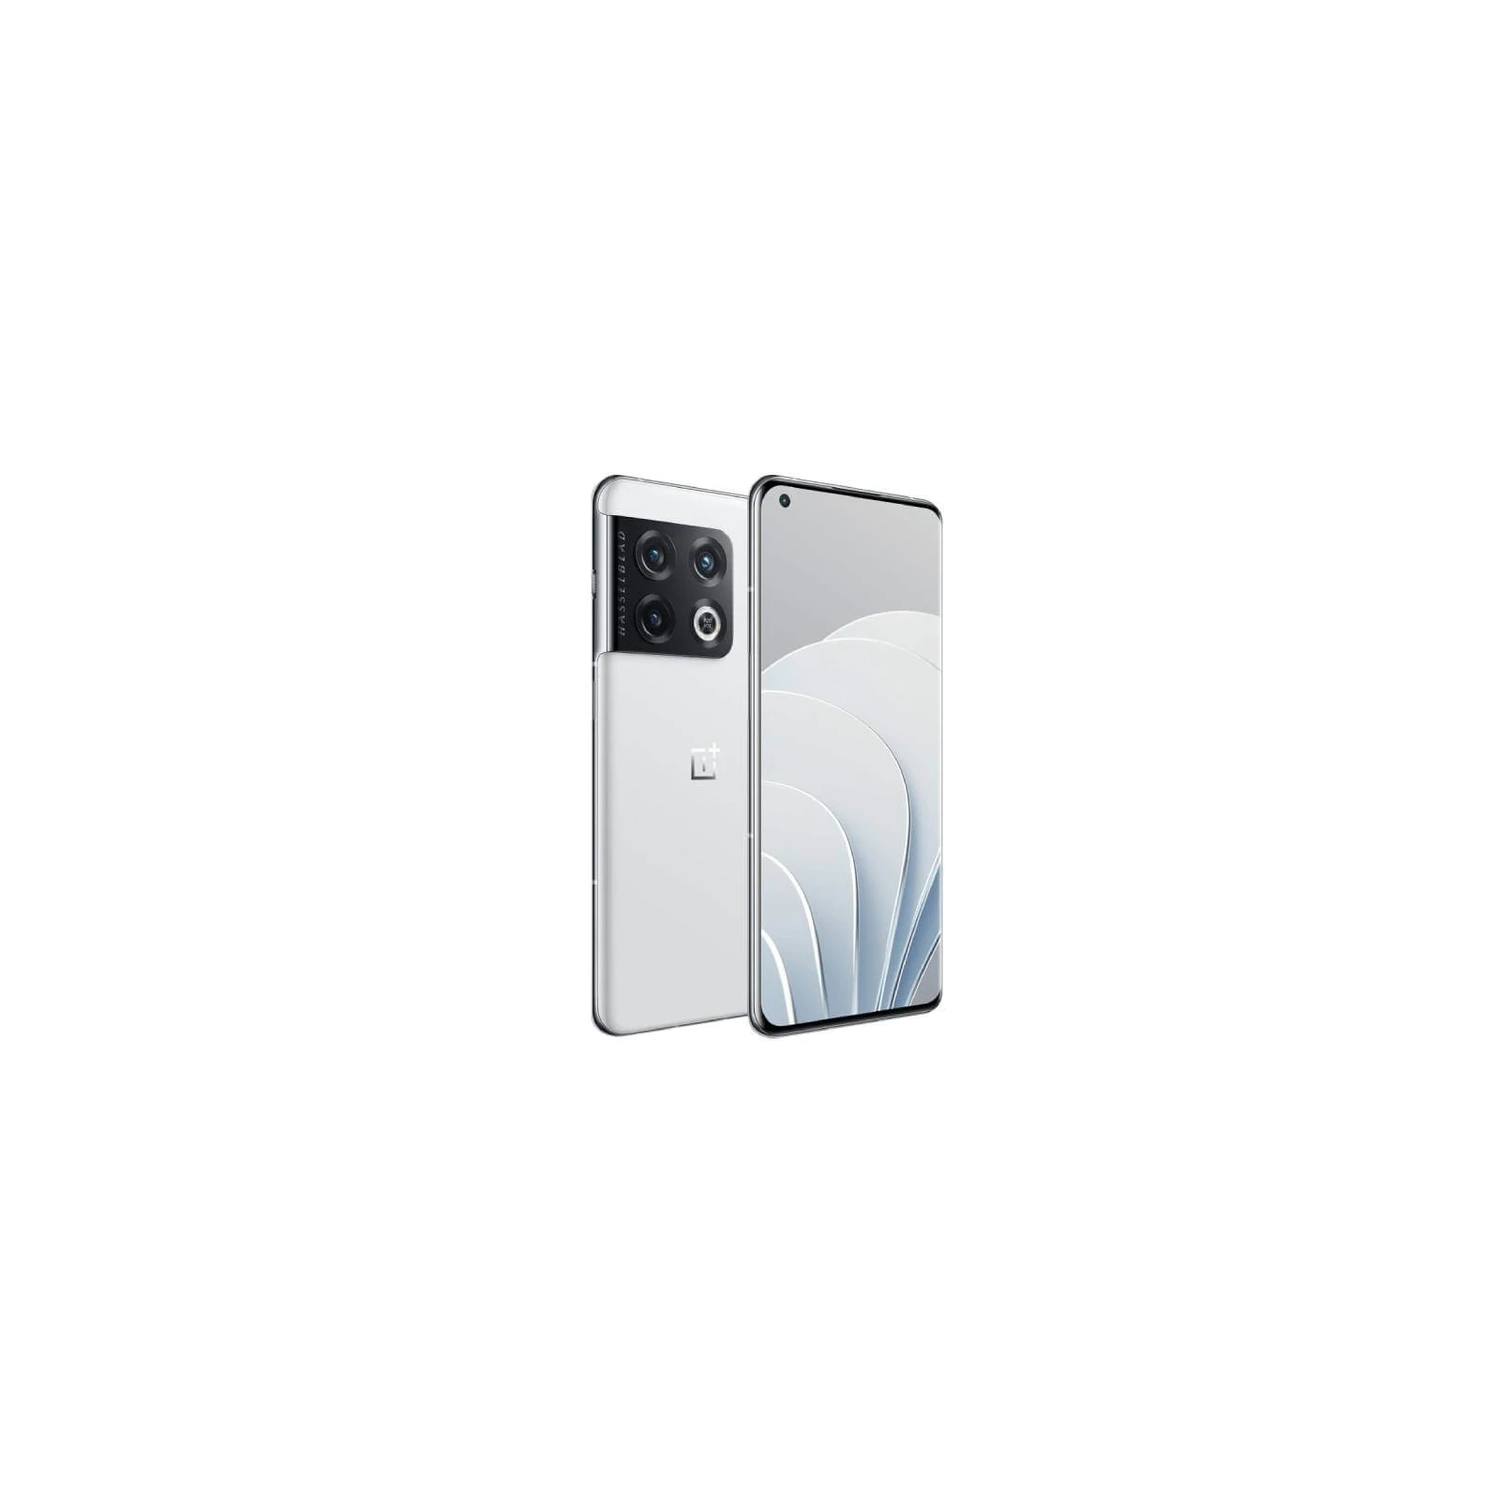 OnePlus 10 Pro NE2210 (China Version, 512GB/12GB, White) - Brand New